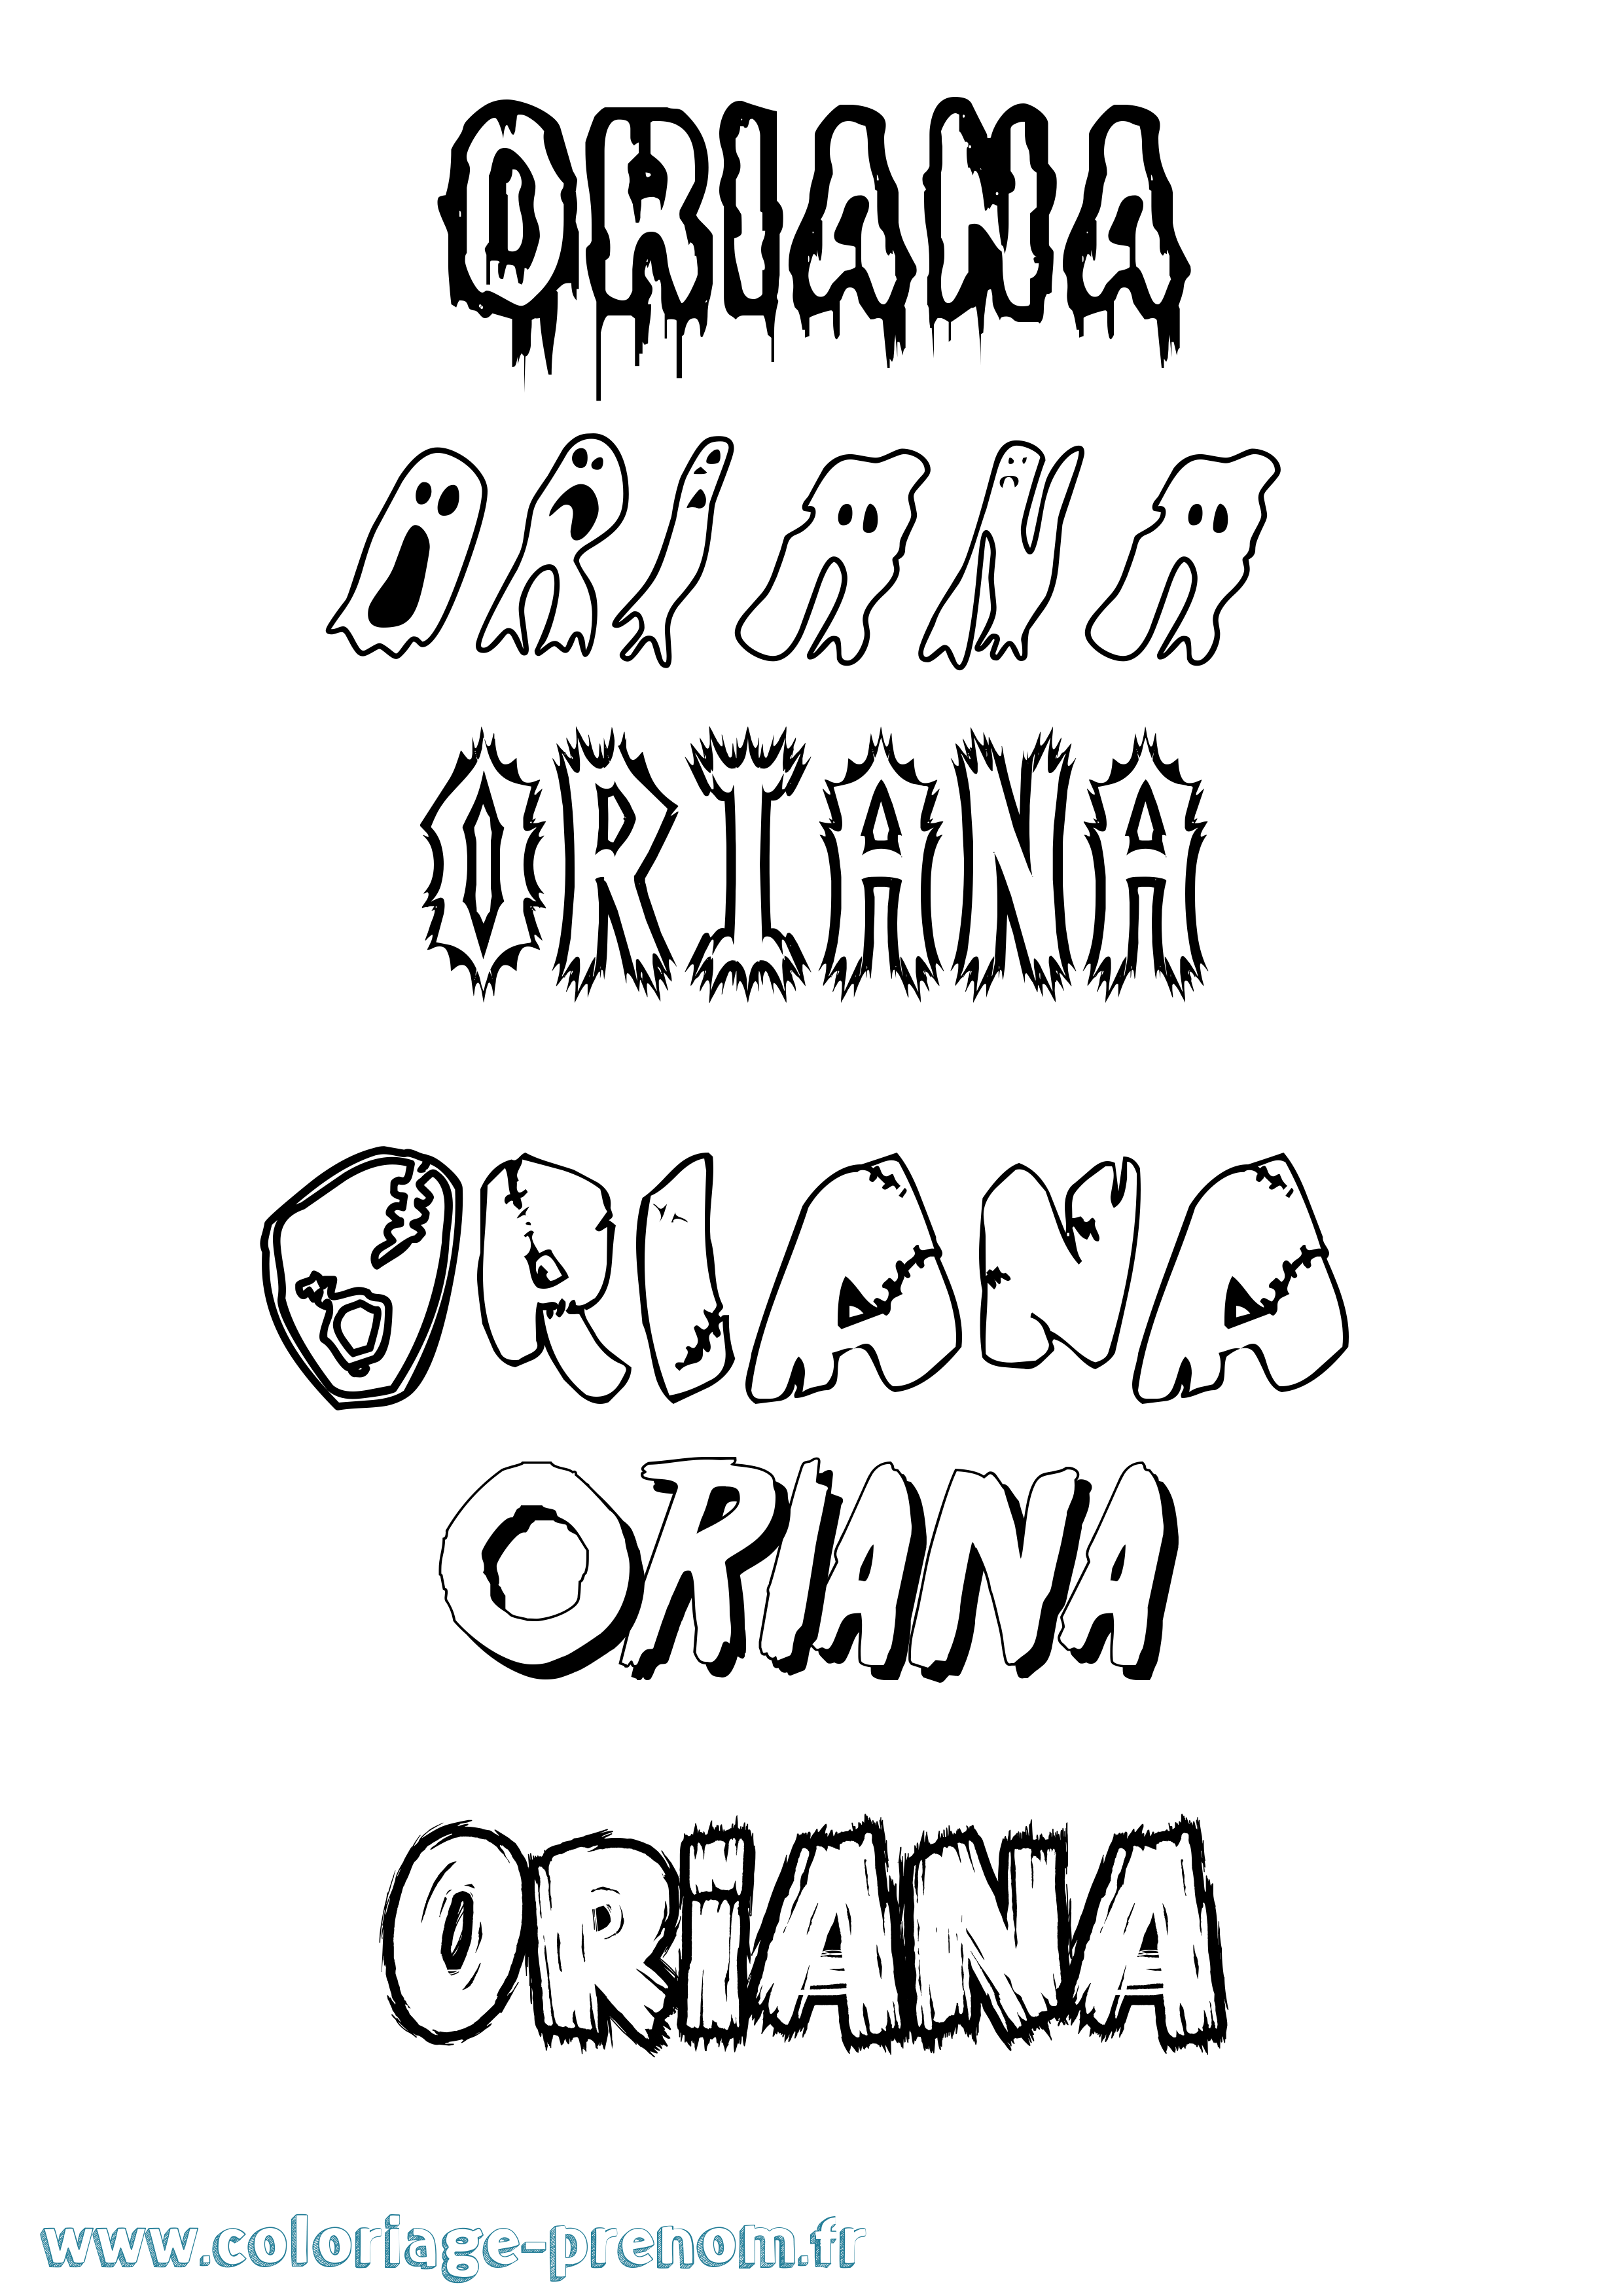 Coloriage prénom Oriana Frisson